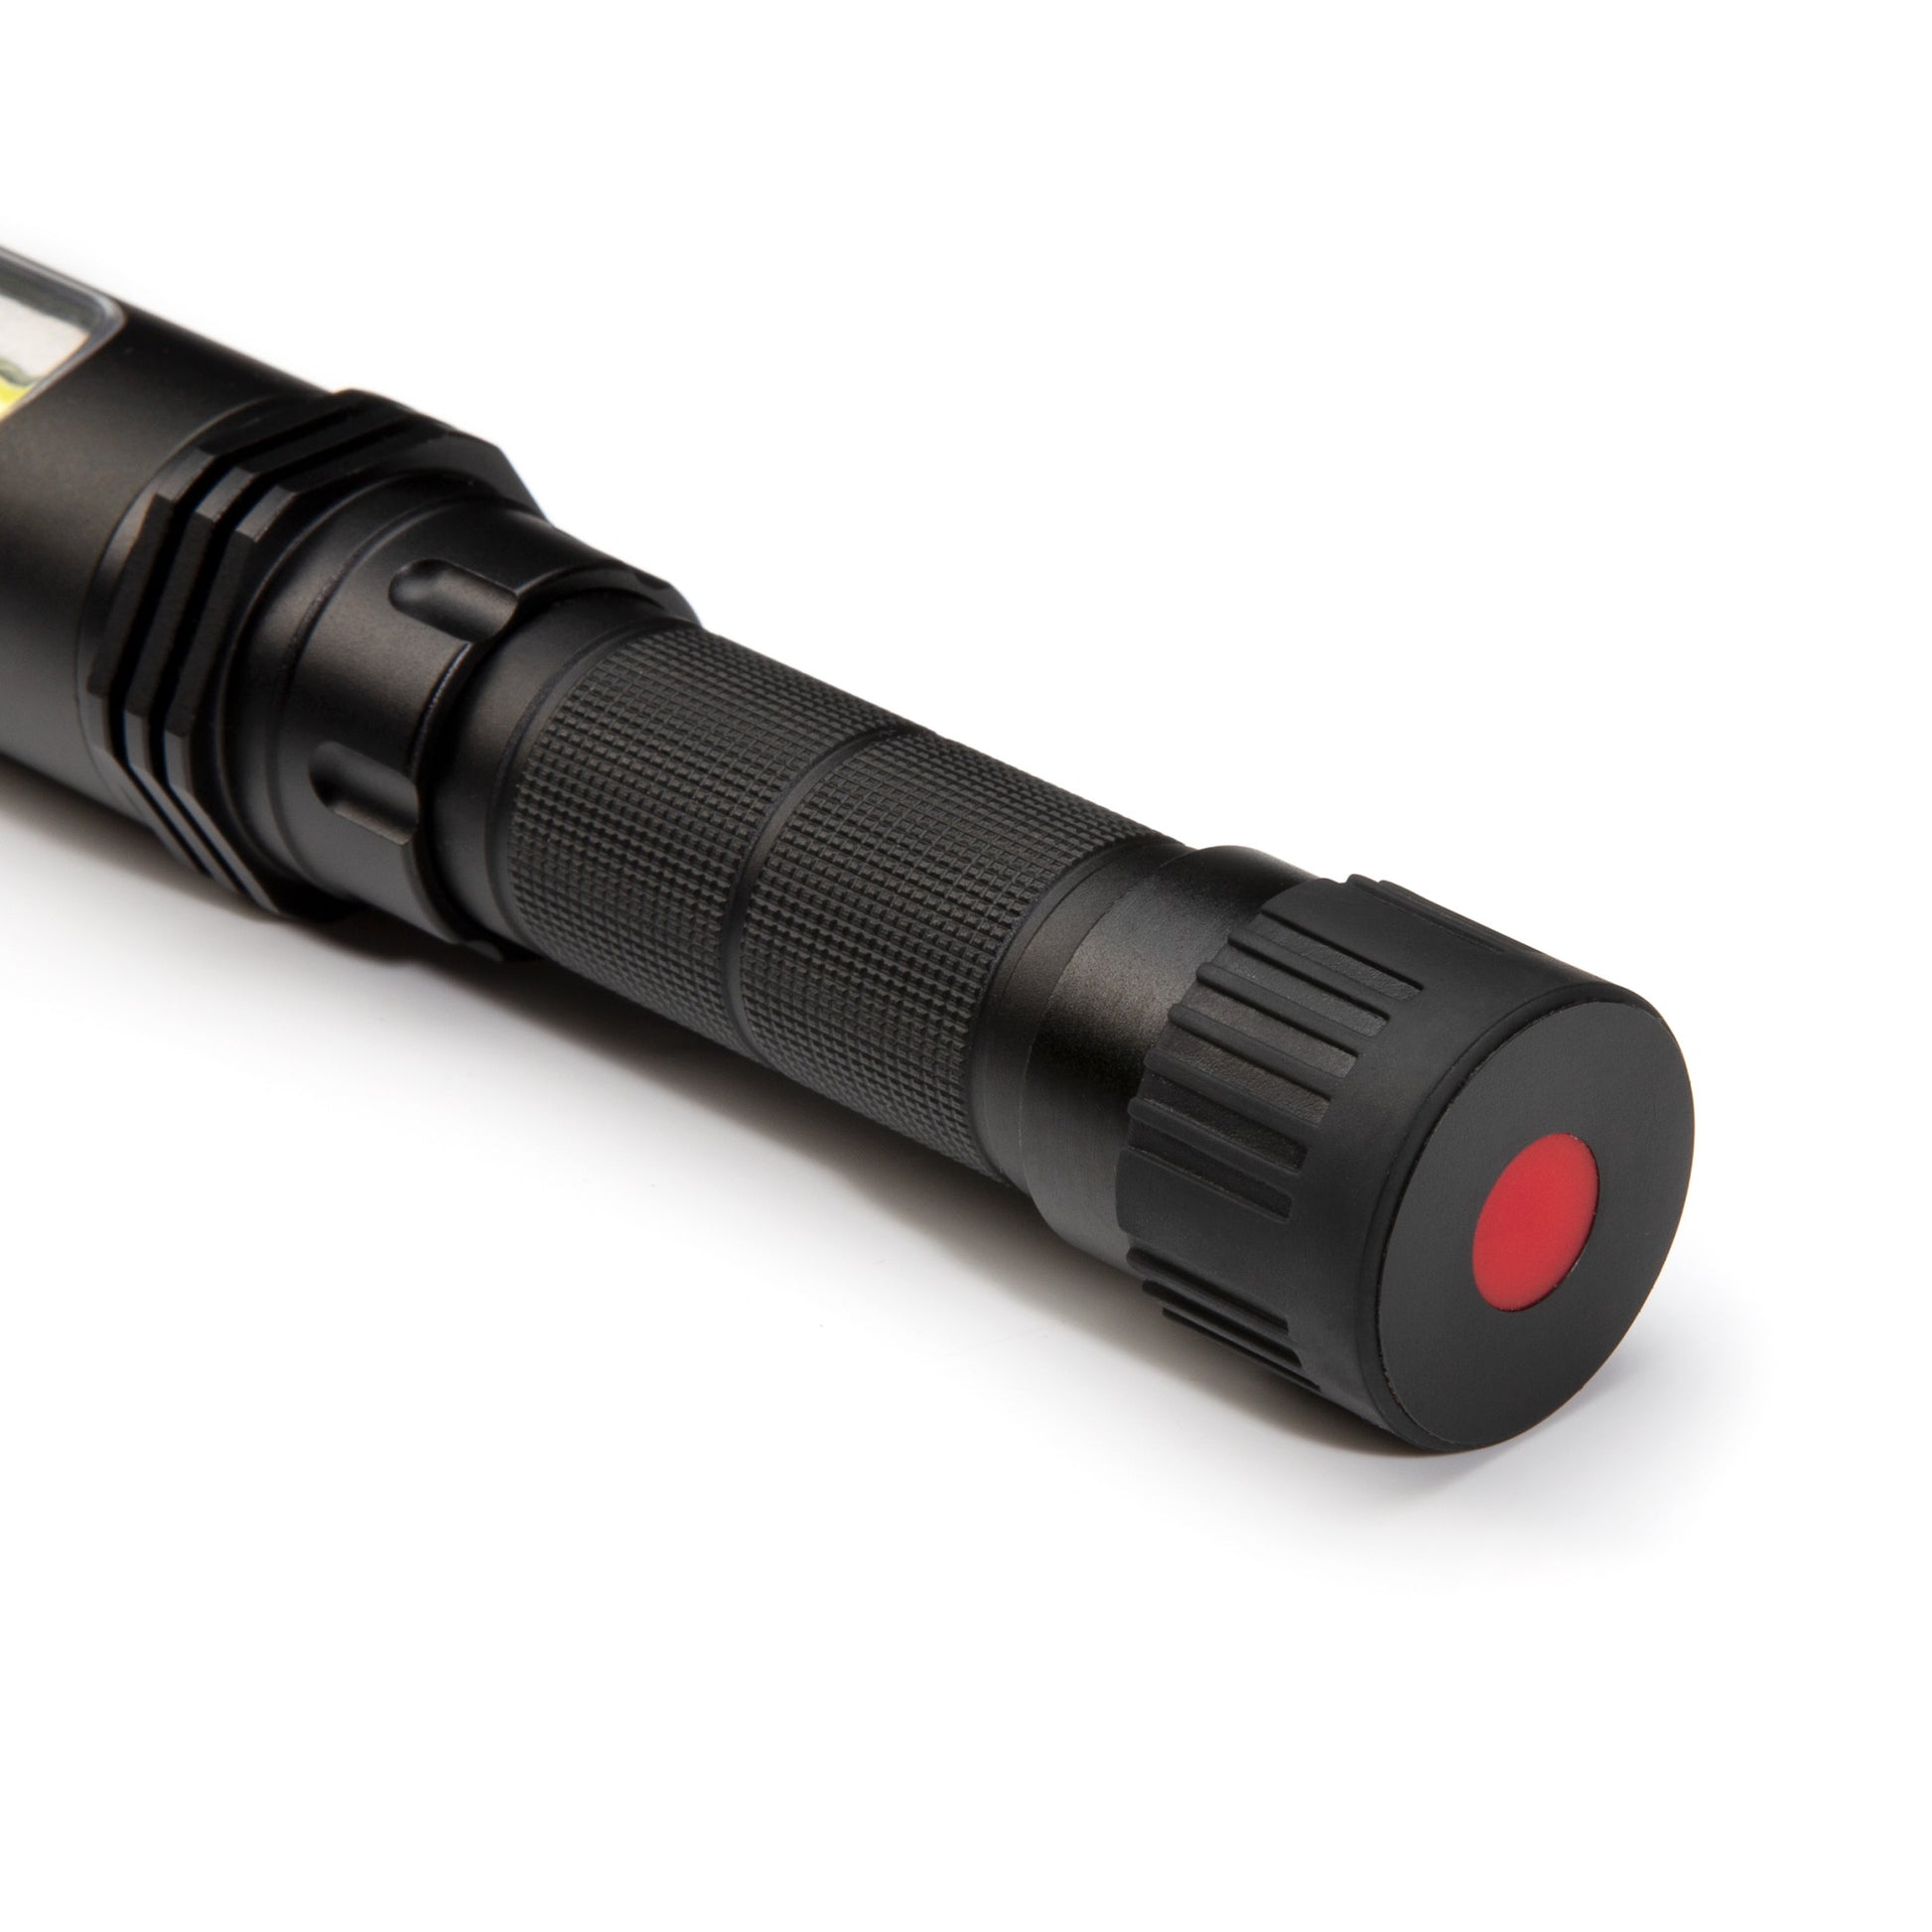 Mini torche rechargeable a tête orientable - 500 Lumens TECHMAN